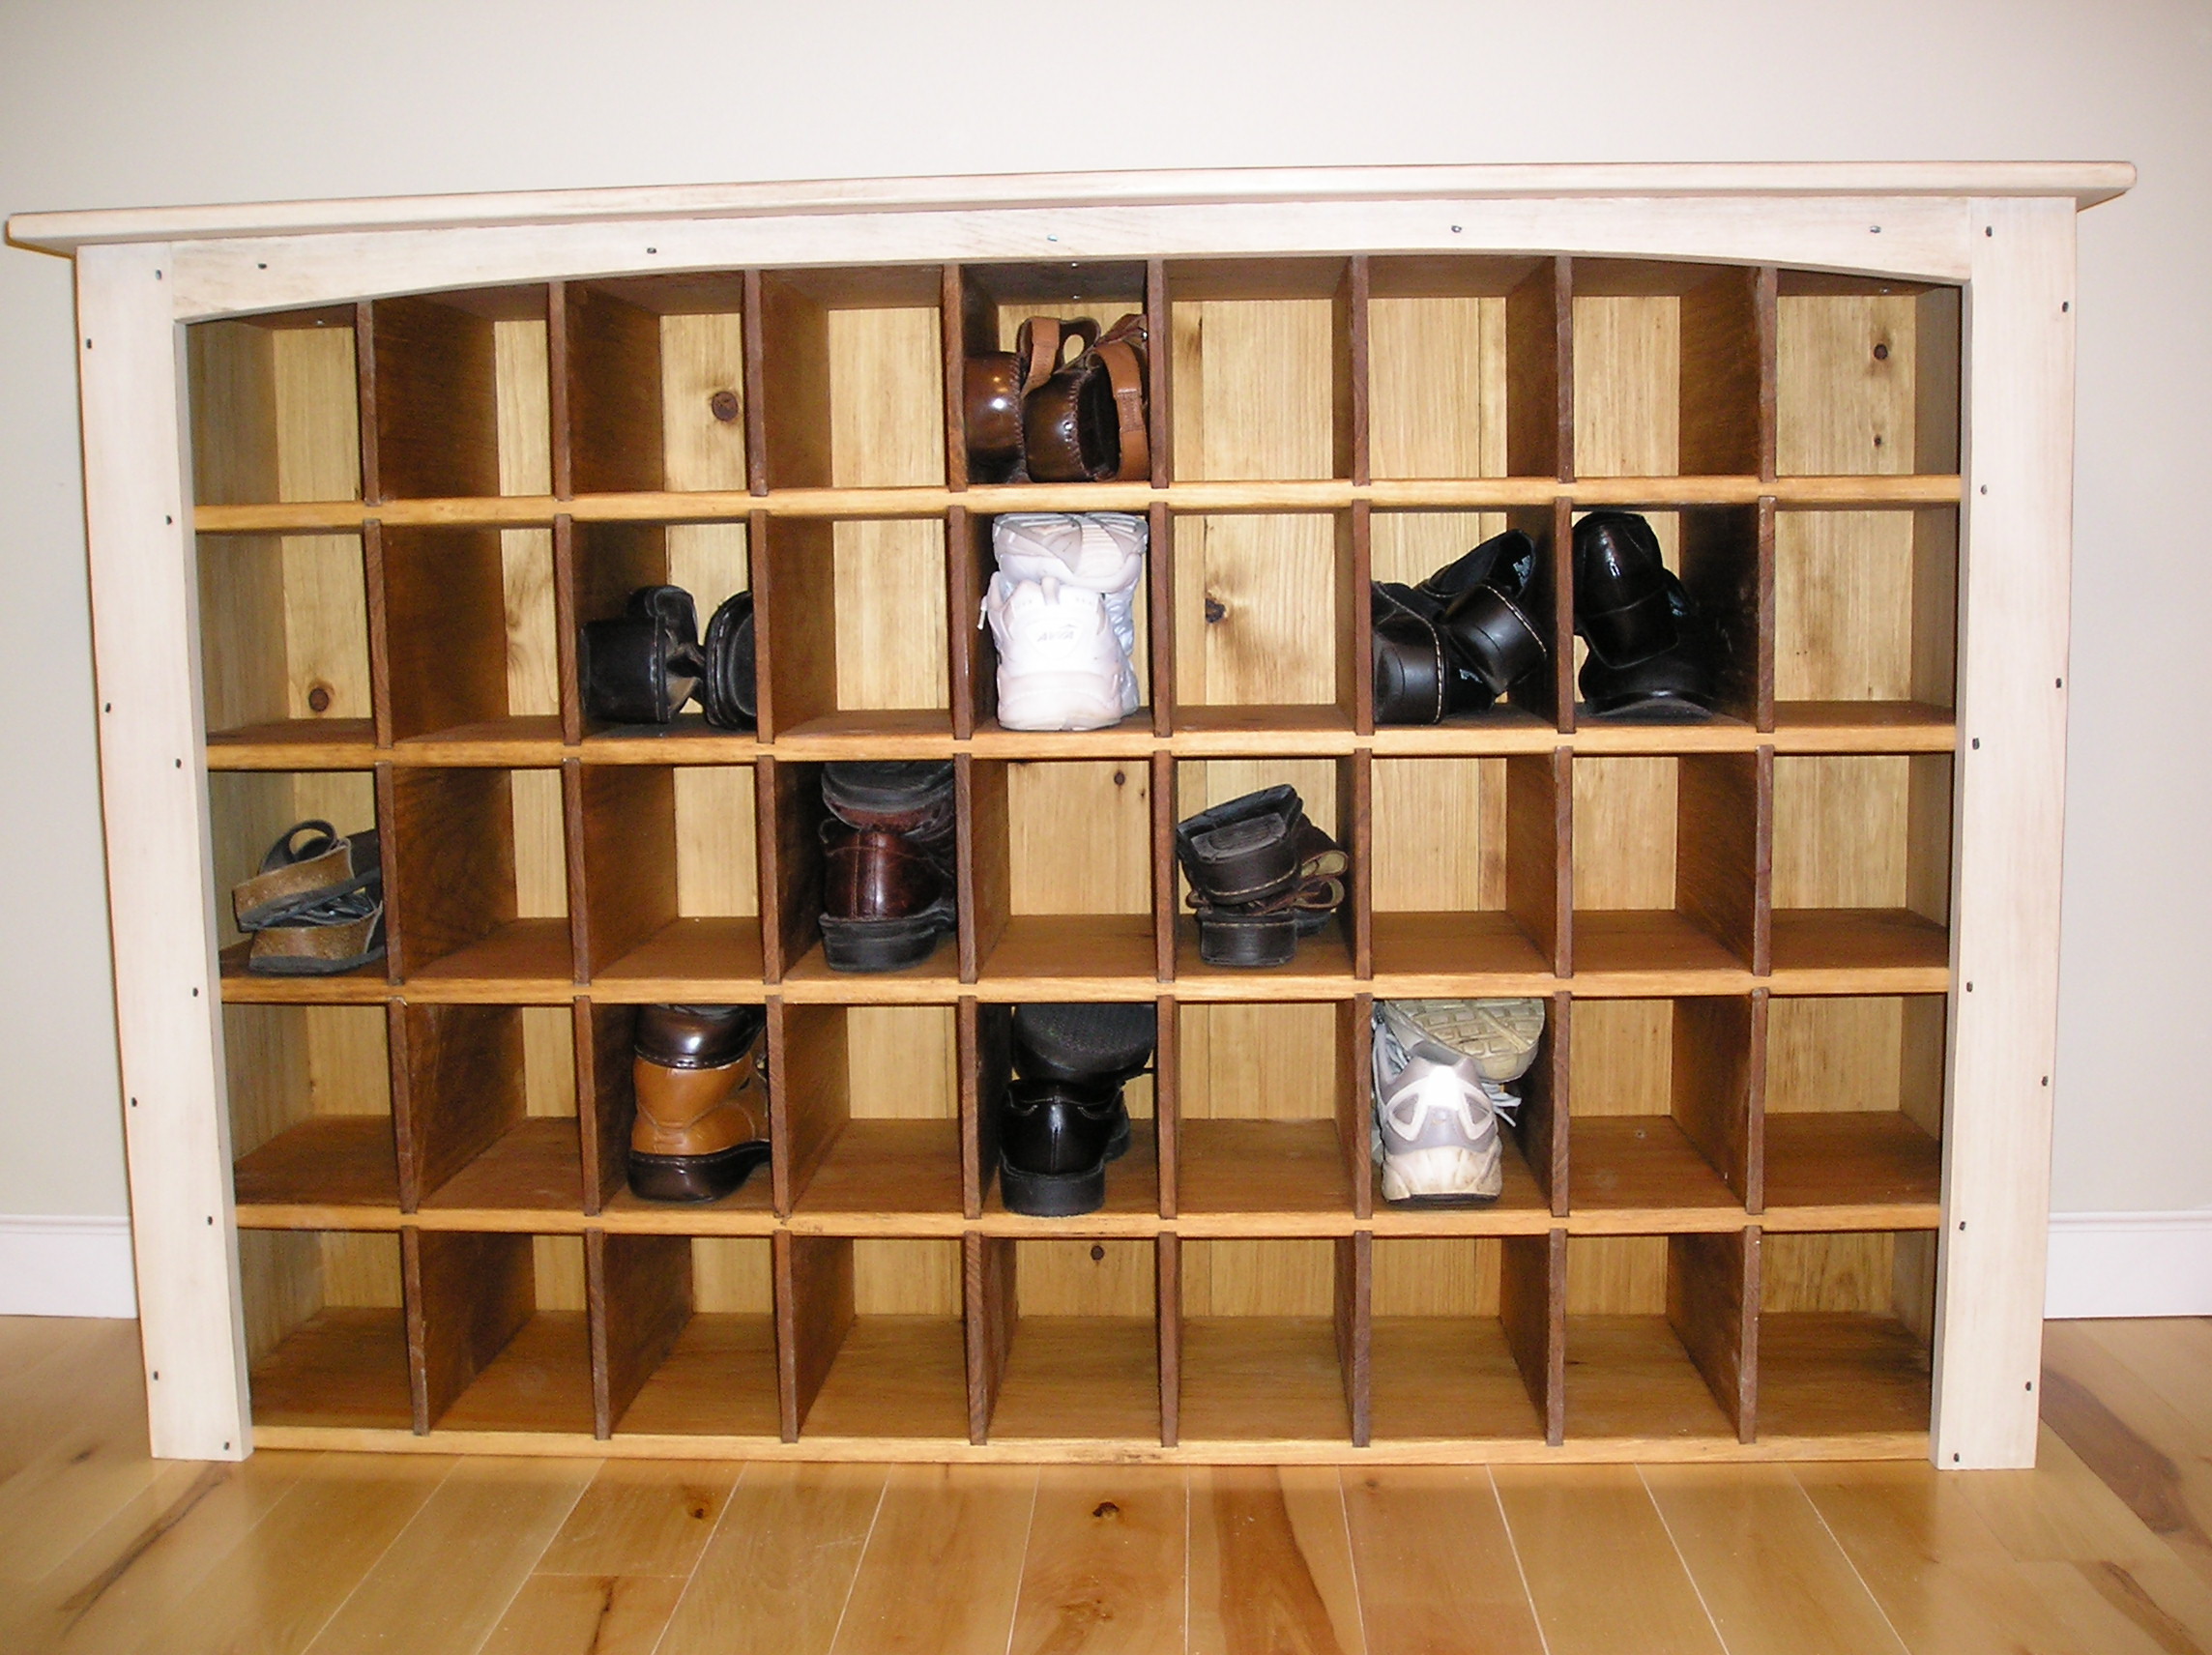 DIY Shoe Organizer For Small Closet
 Saving space a shoe closet storage